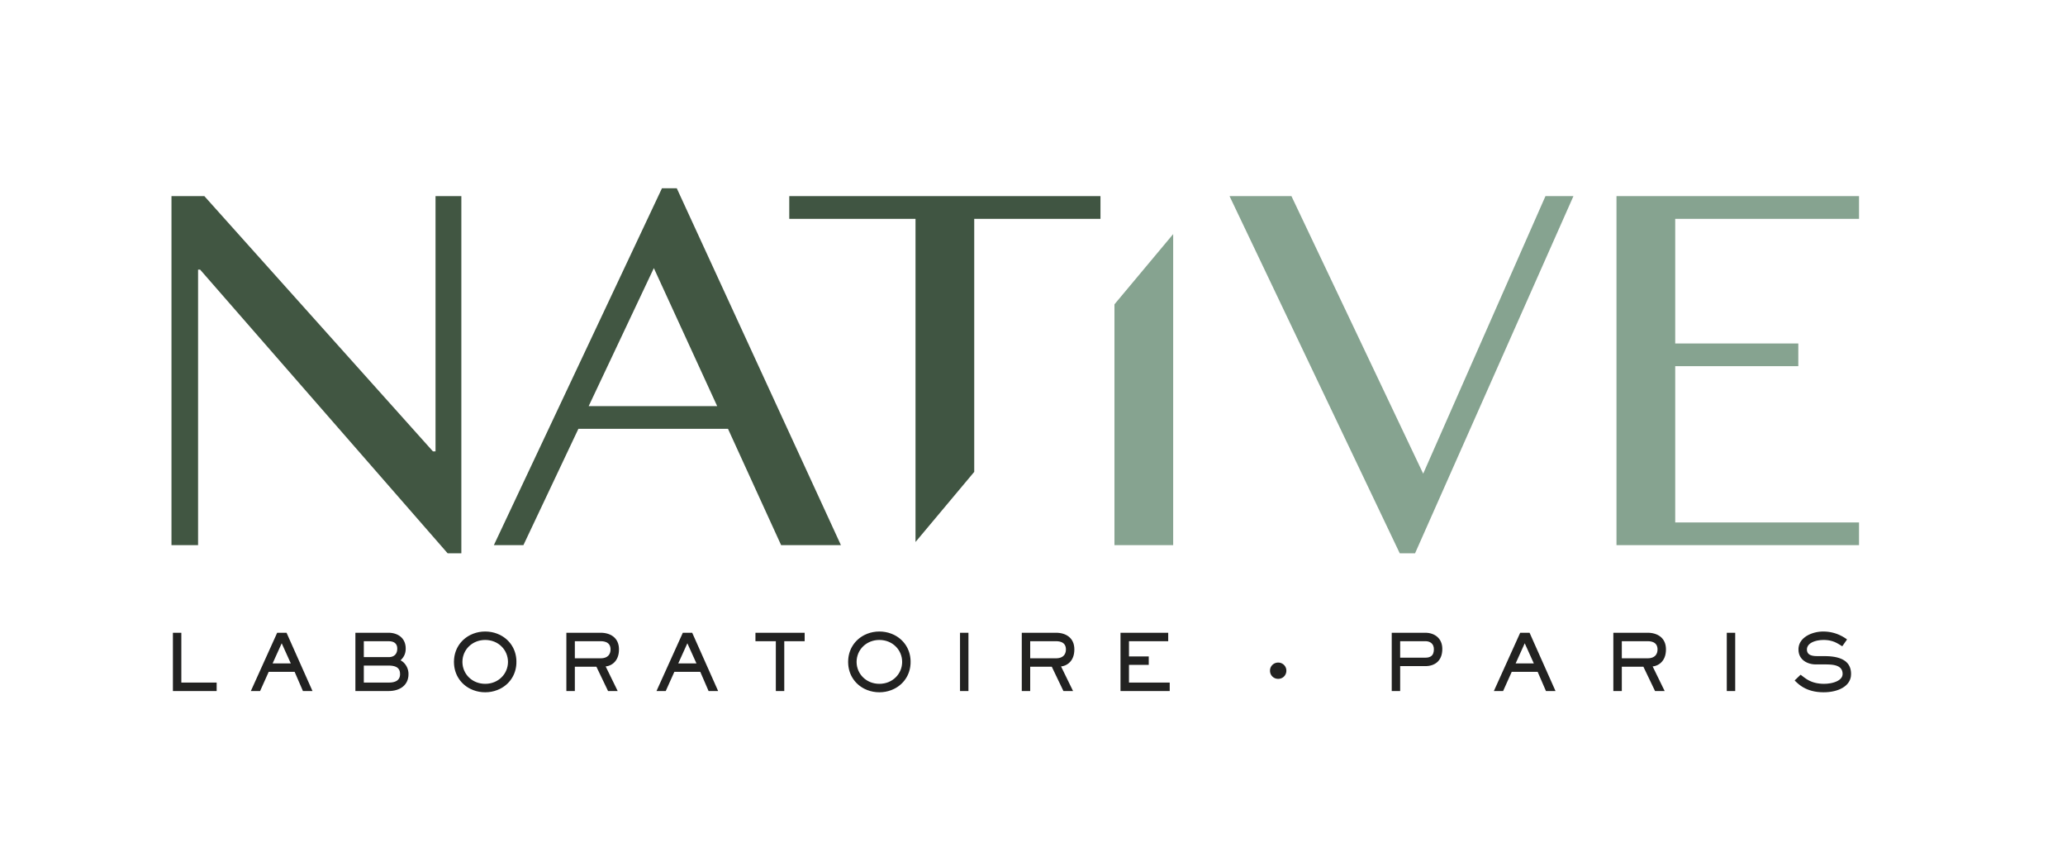 LABORATOIRE-NATIVE_LOGO_RVB